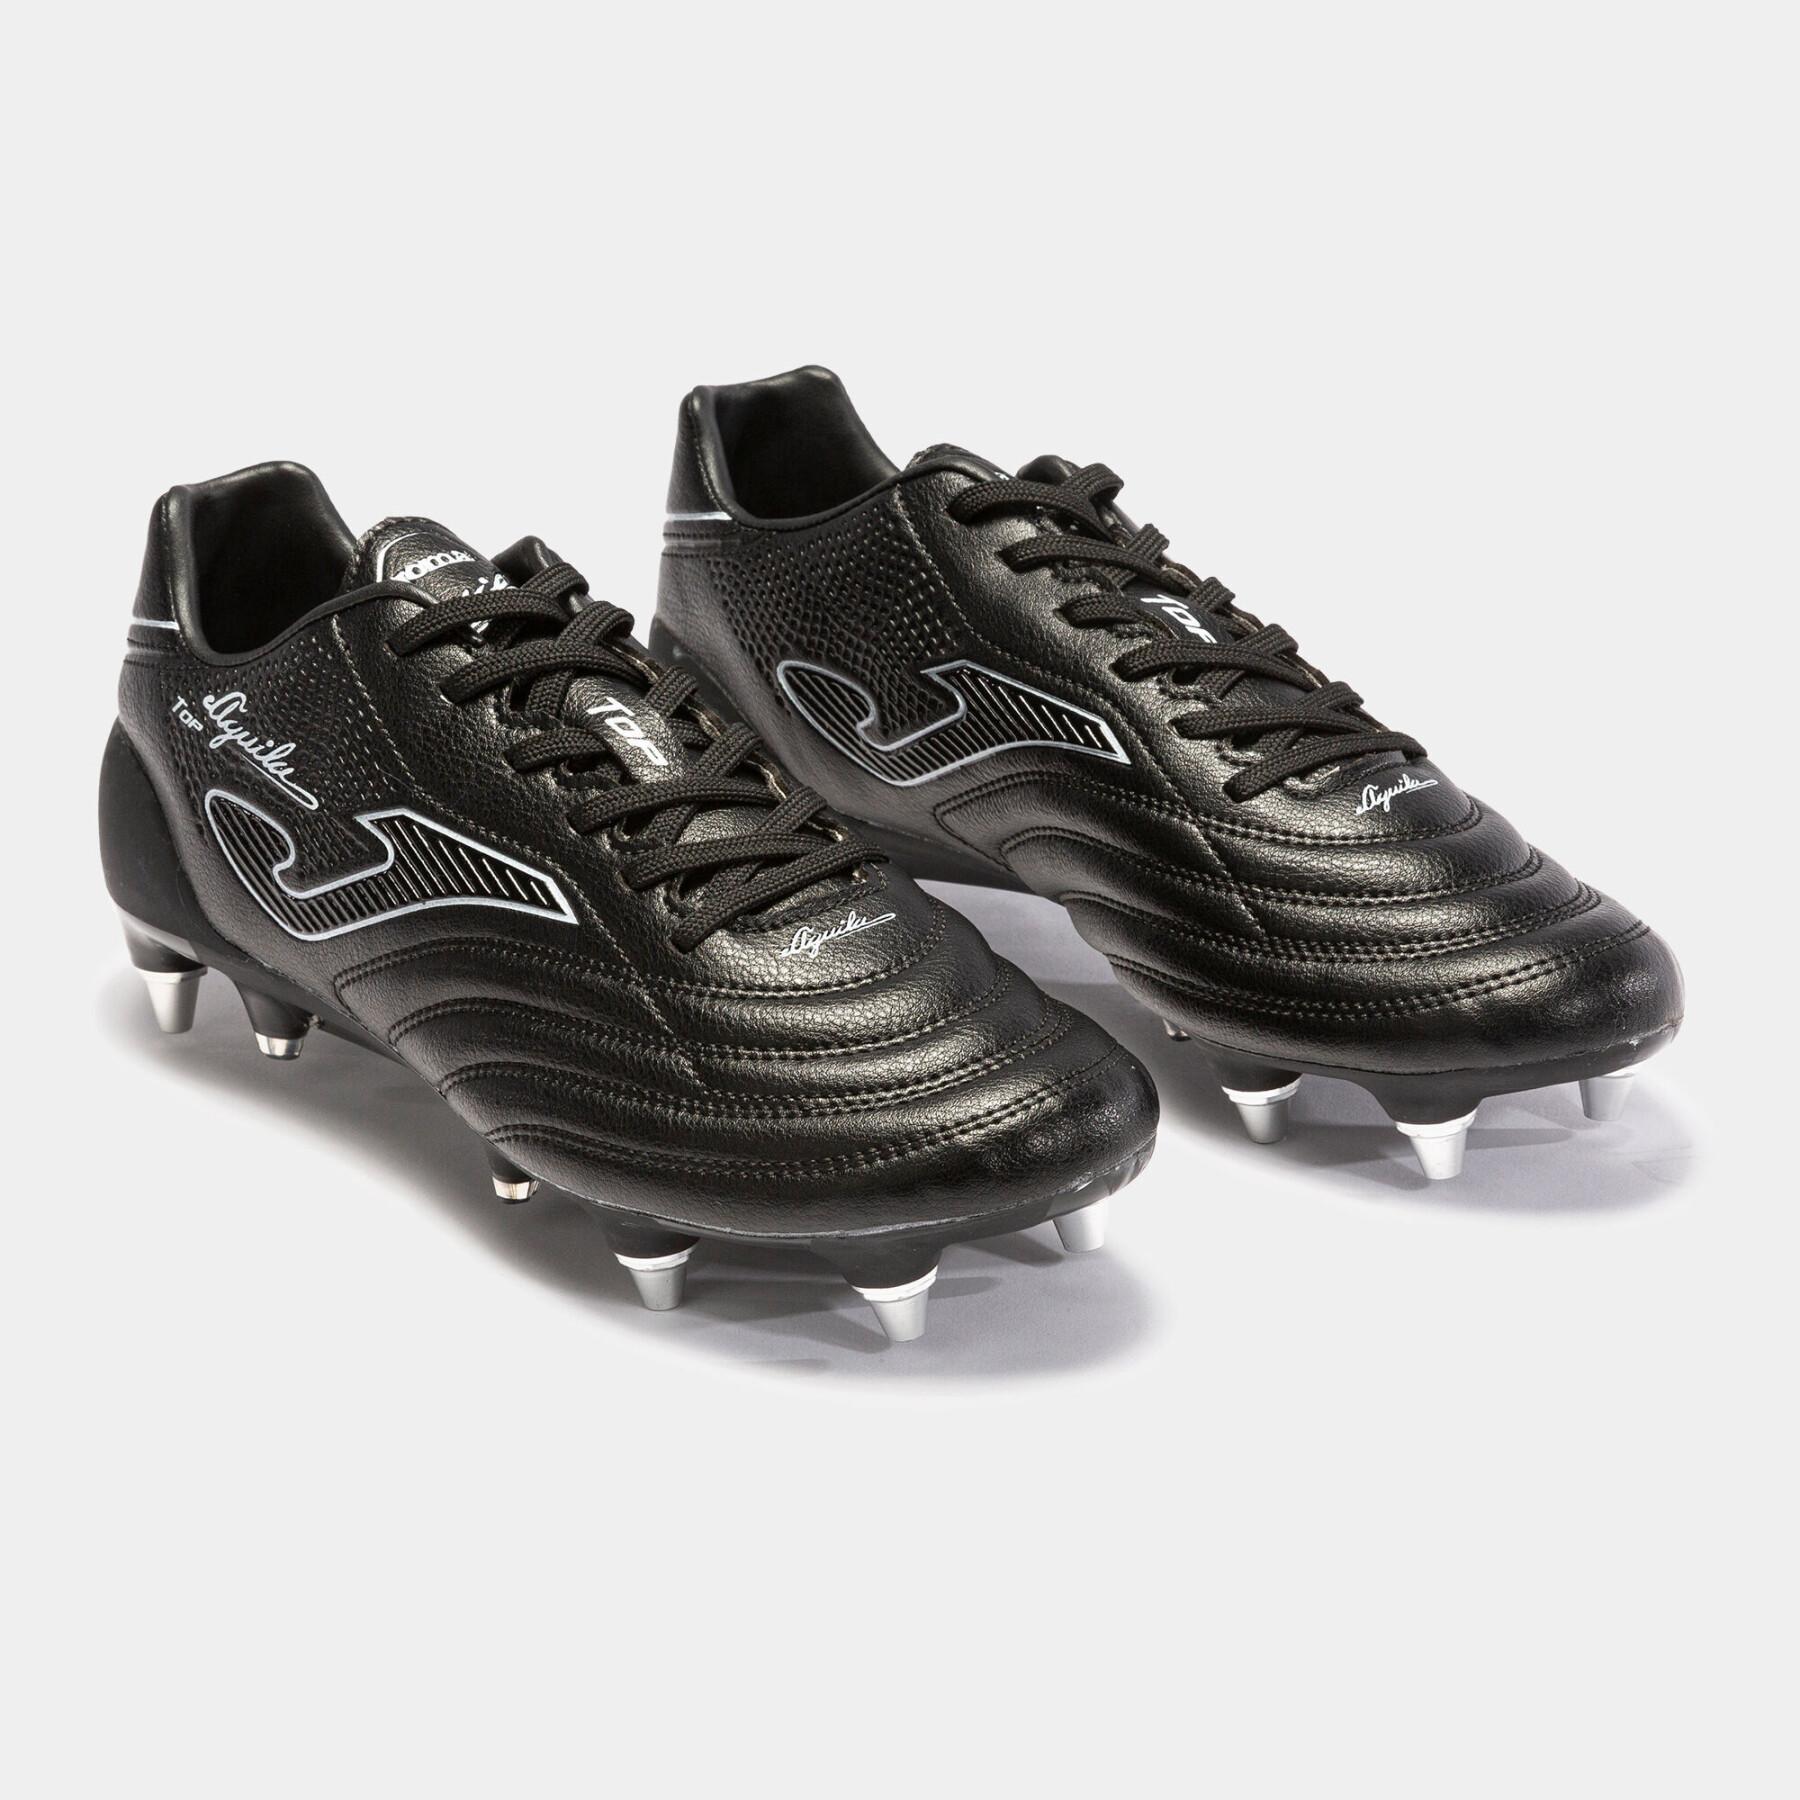 Miękkie buty piłkarskie dla dzieci Joma Aguila Top 2101